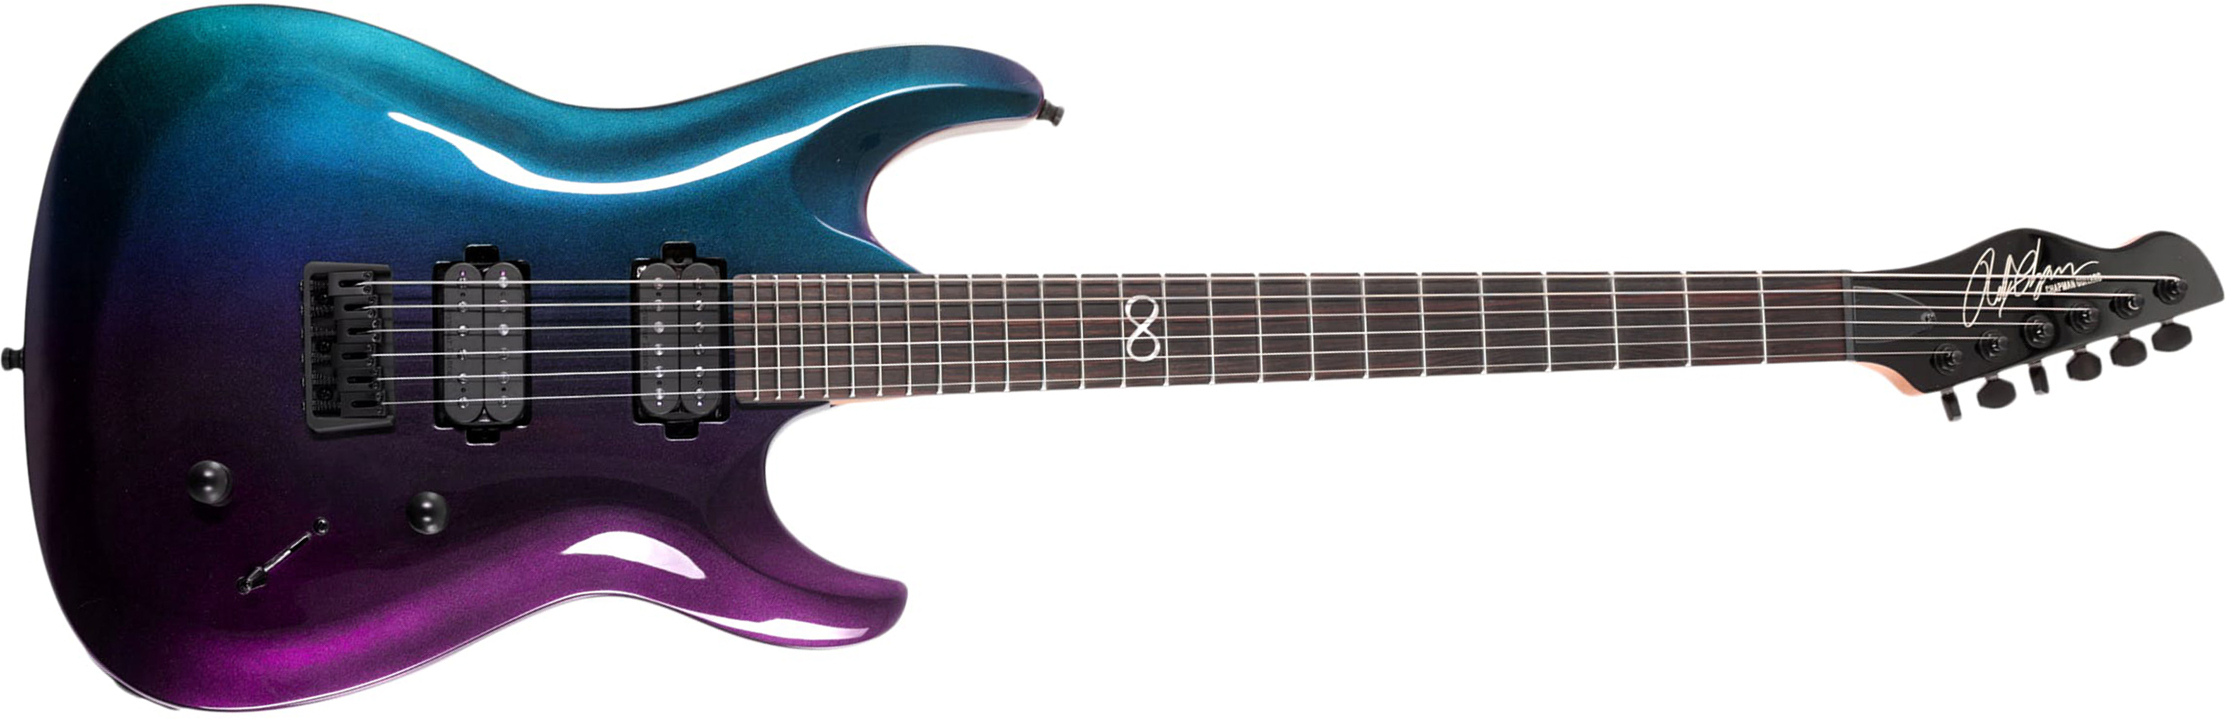 Chapman Guitars Ml1 Modern Pro 2h Seymour Duncan  Ht Eb - Morpheus Purple Flip - Str shape electric guitar - Main picture